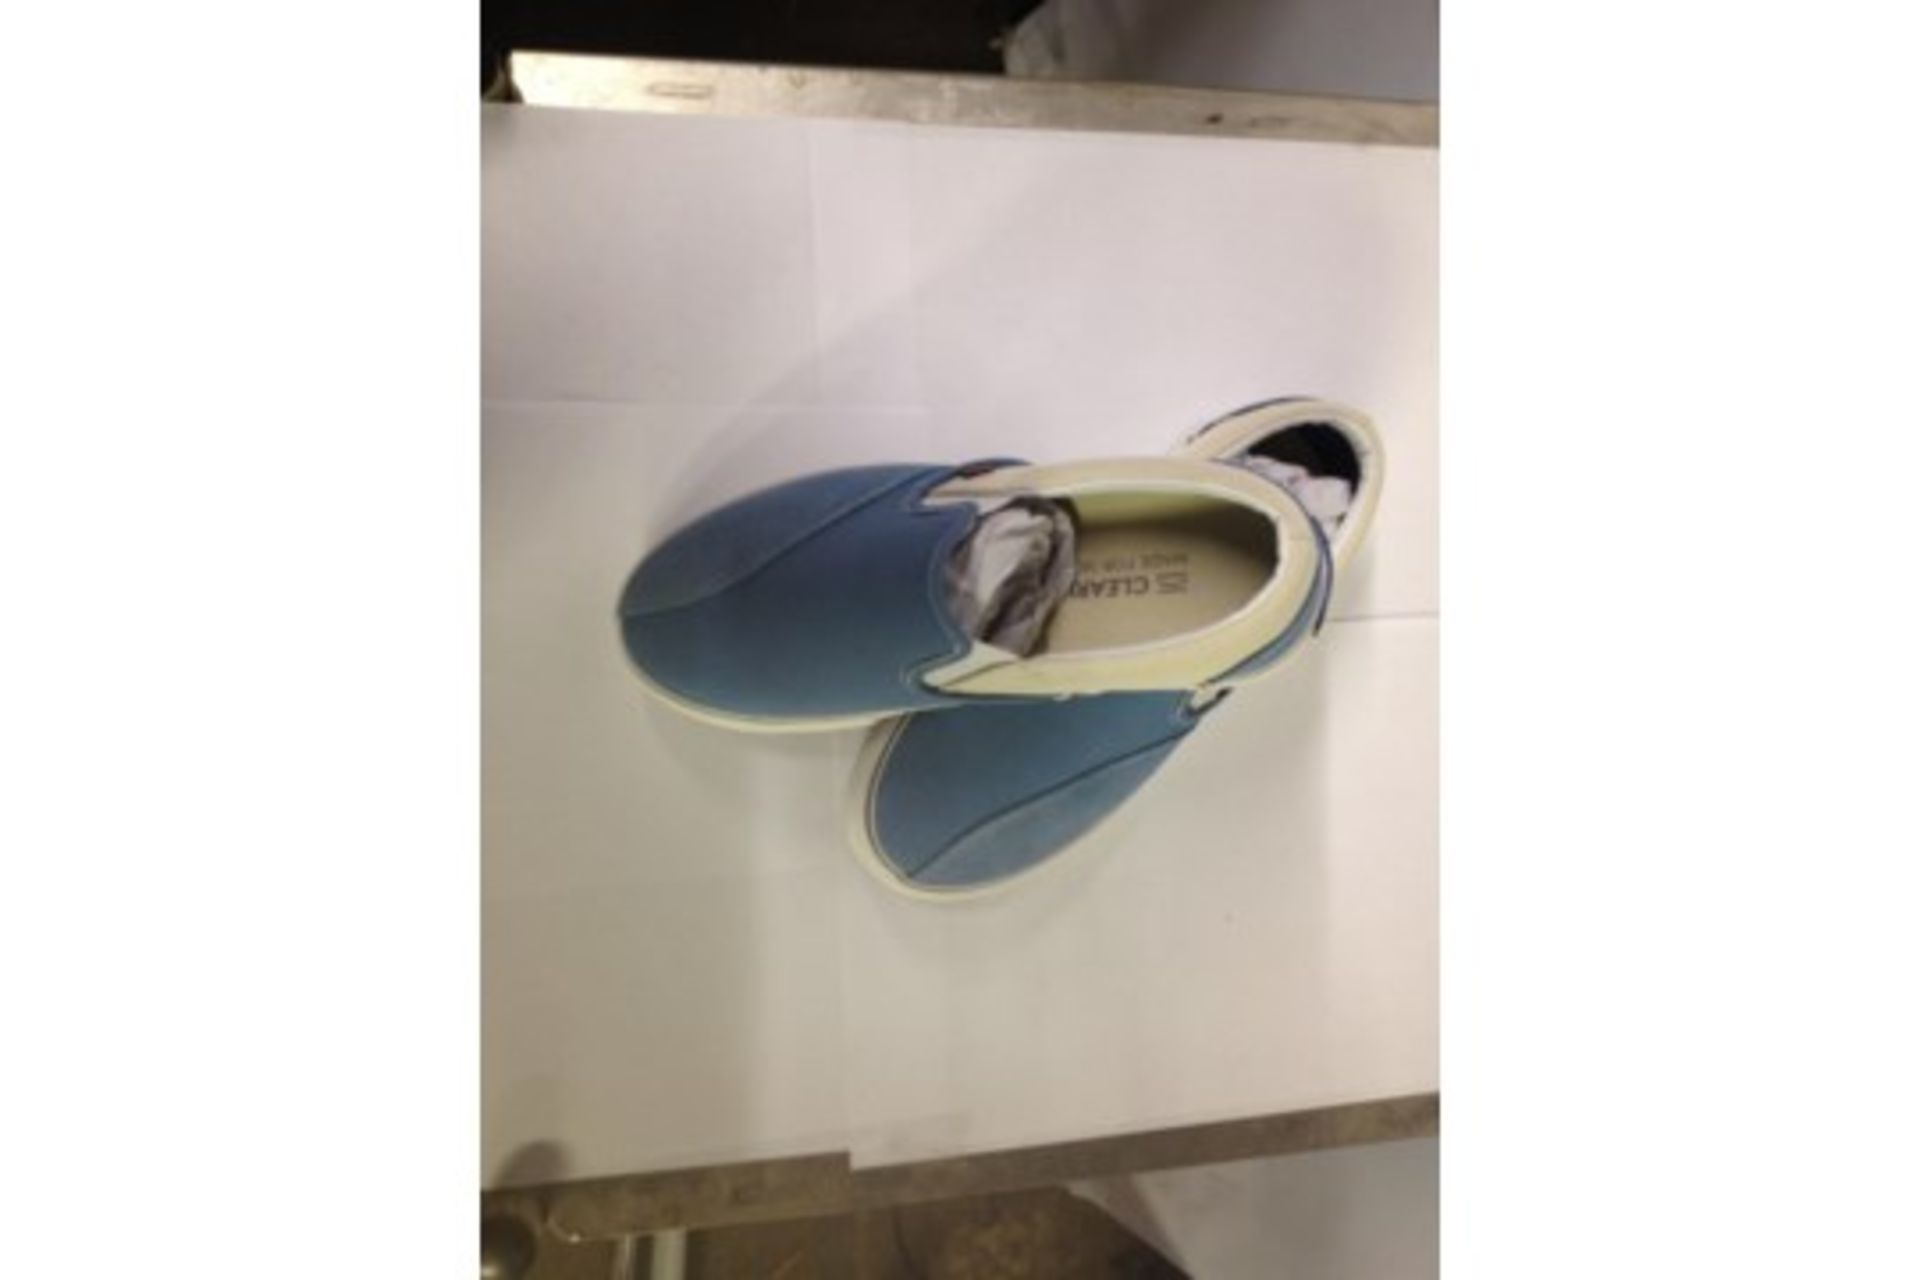 1 x Dodds Skate Shoe | Colour: Blue Shadow | UK Size: 4 | Unisex | RRP £ 55